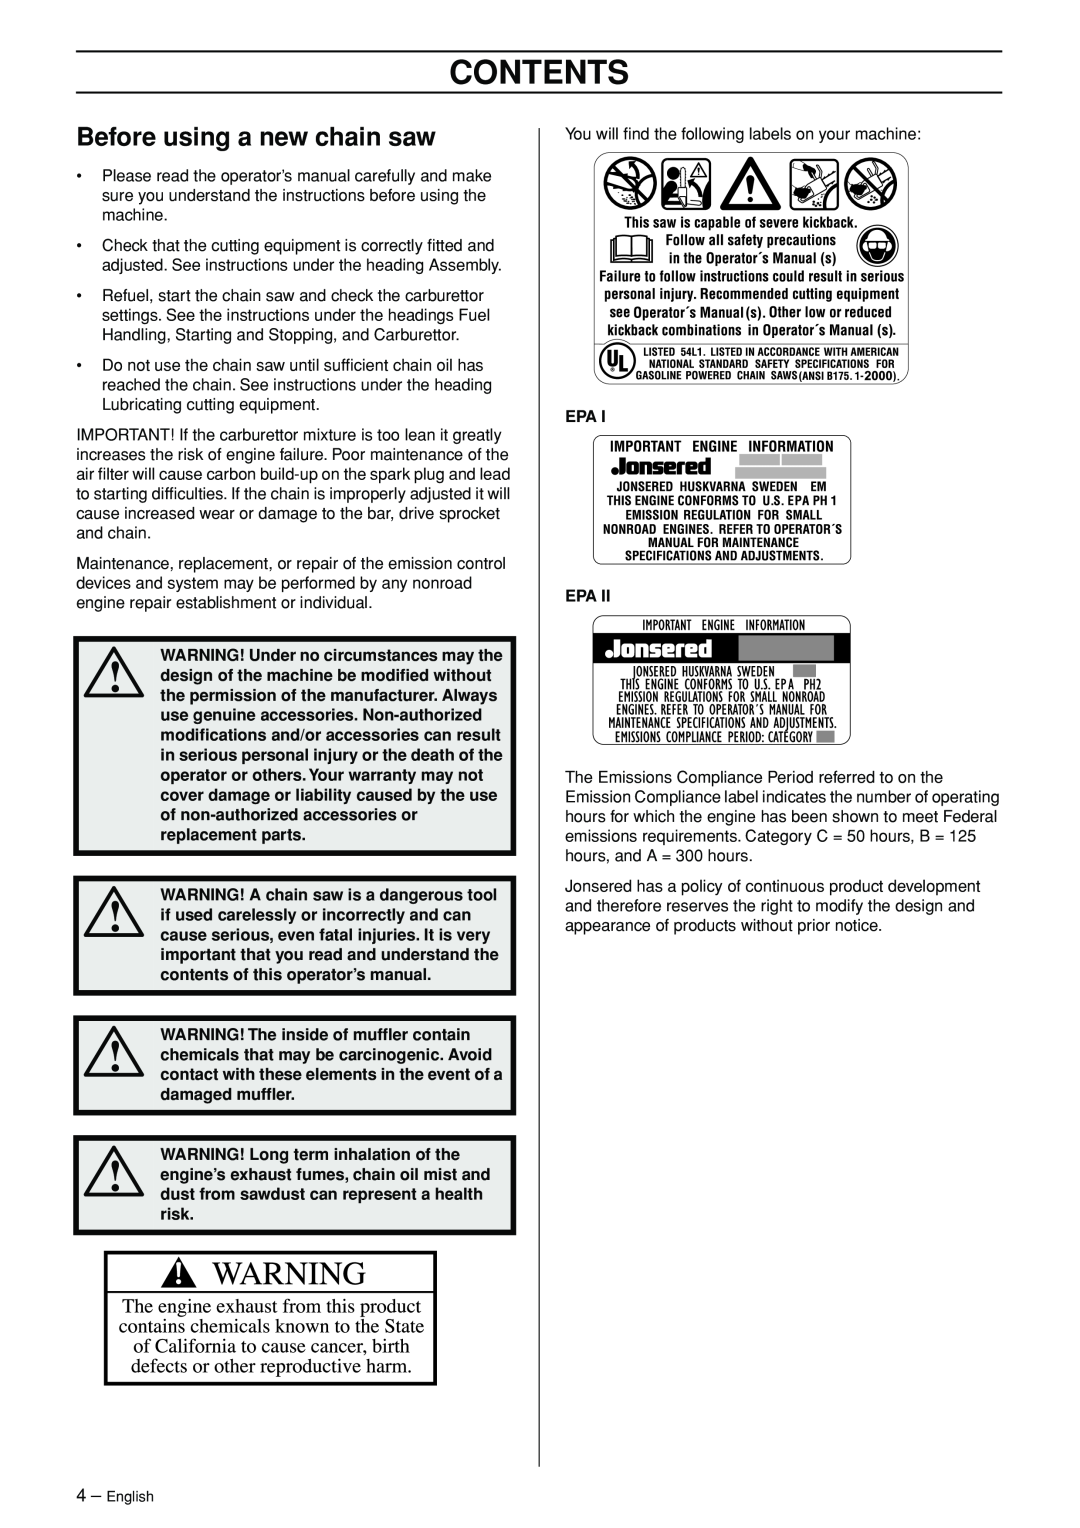 Jonsered CS 2145 EPA II, CS 2150 EPA I, CS 2141 EPA II manual Before using a new chain saw, Contents 